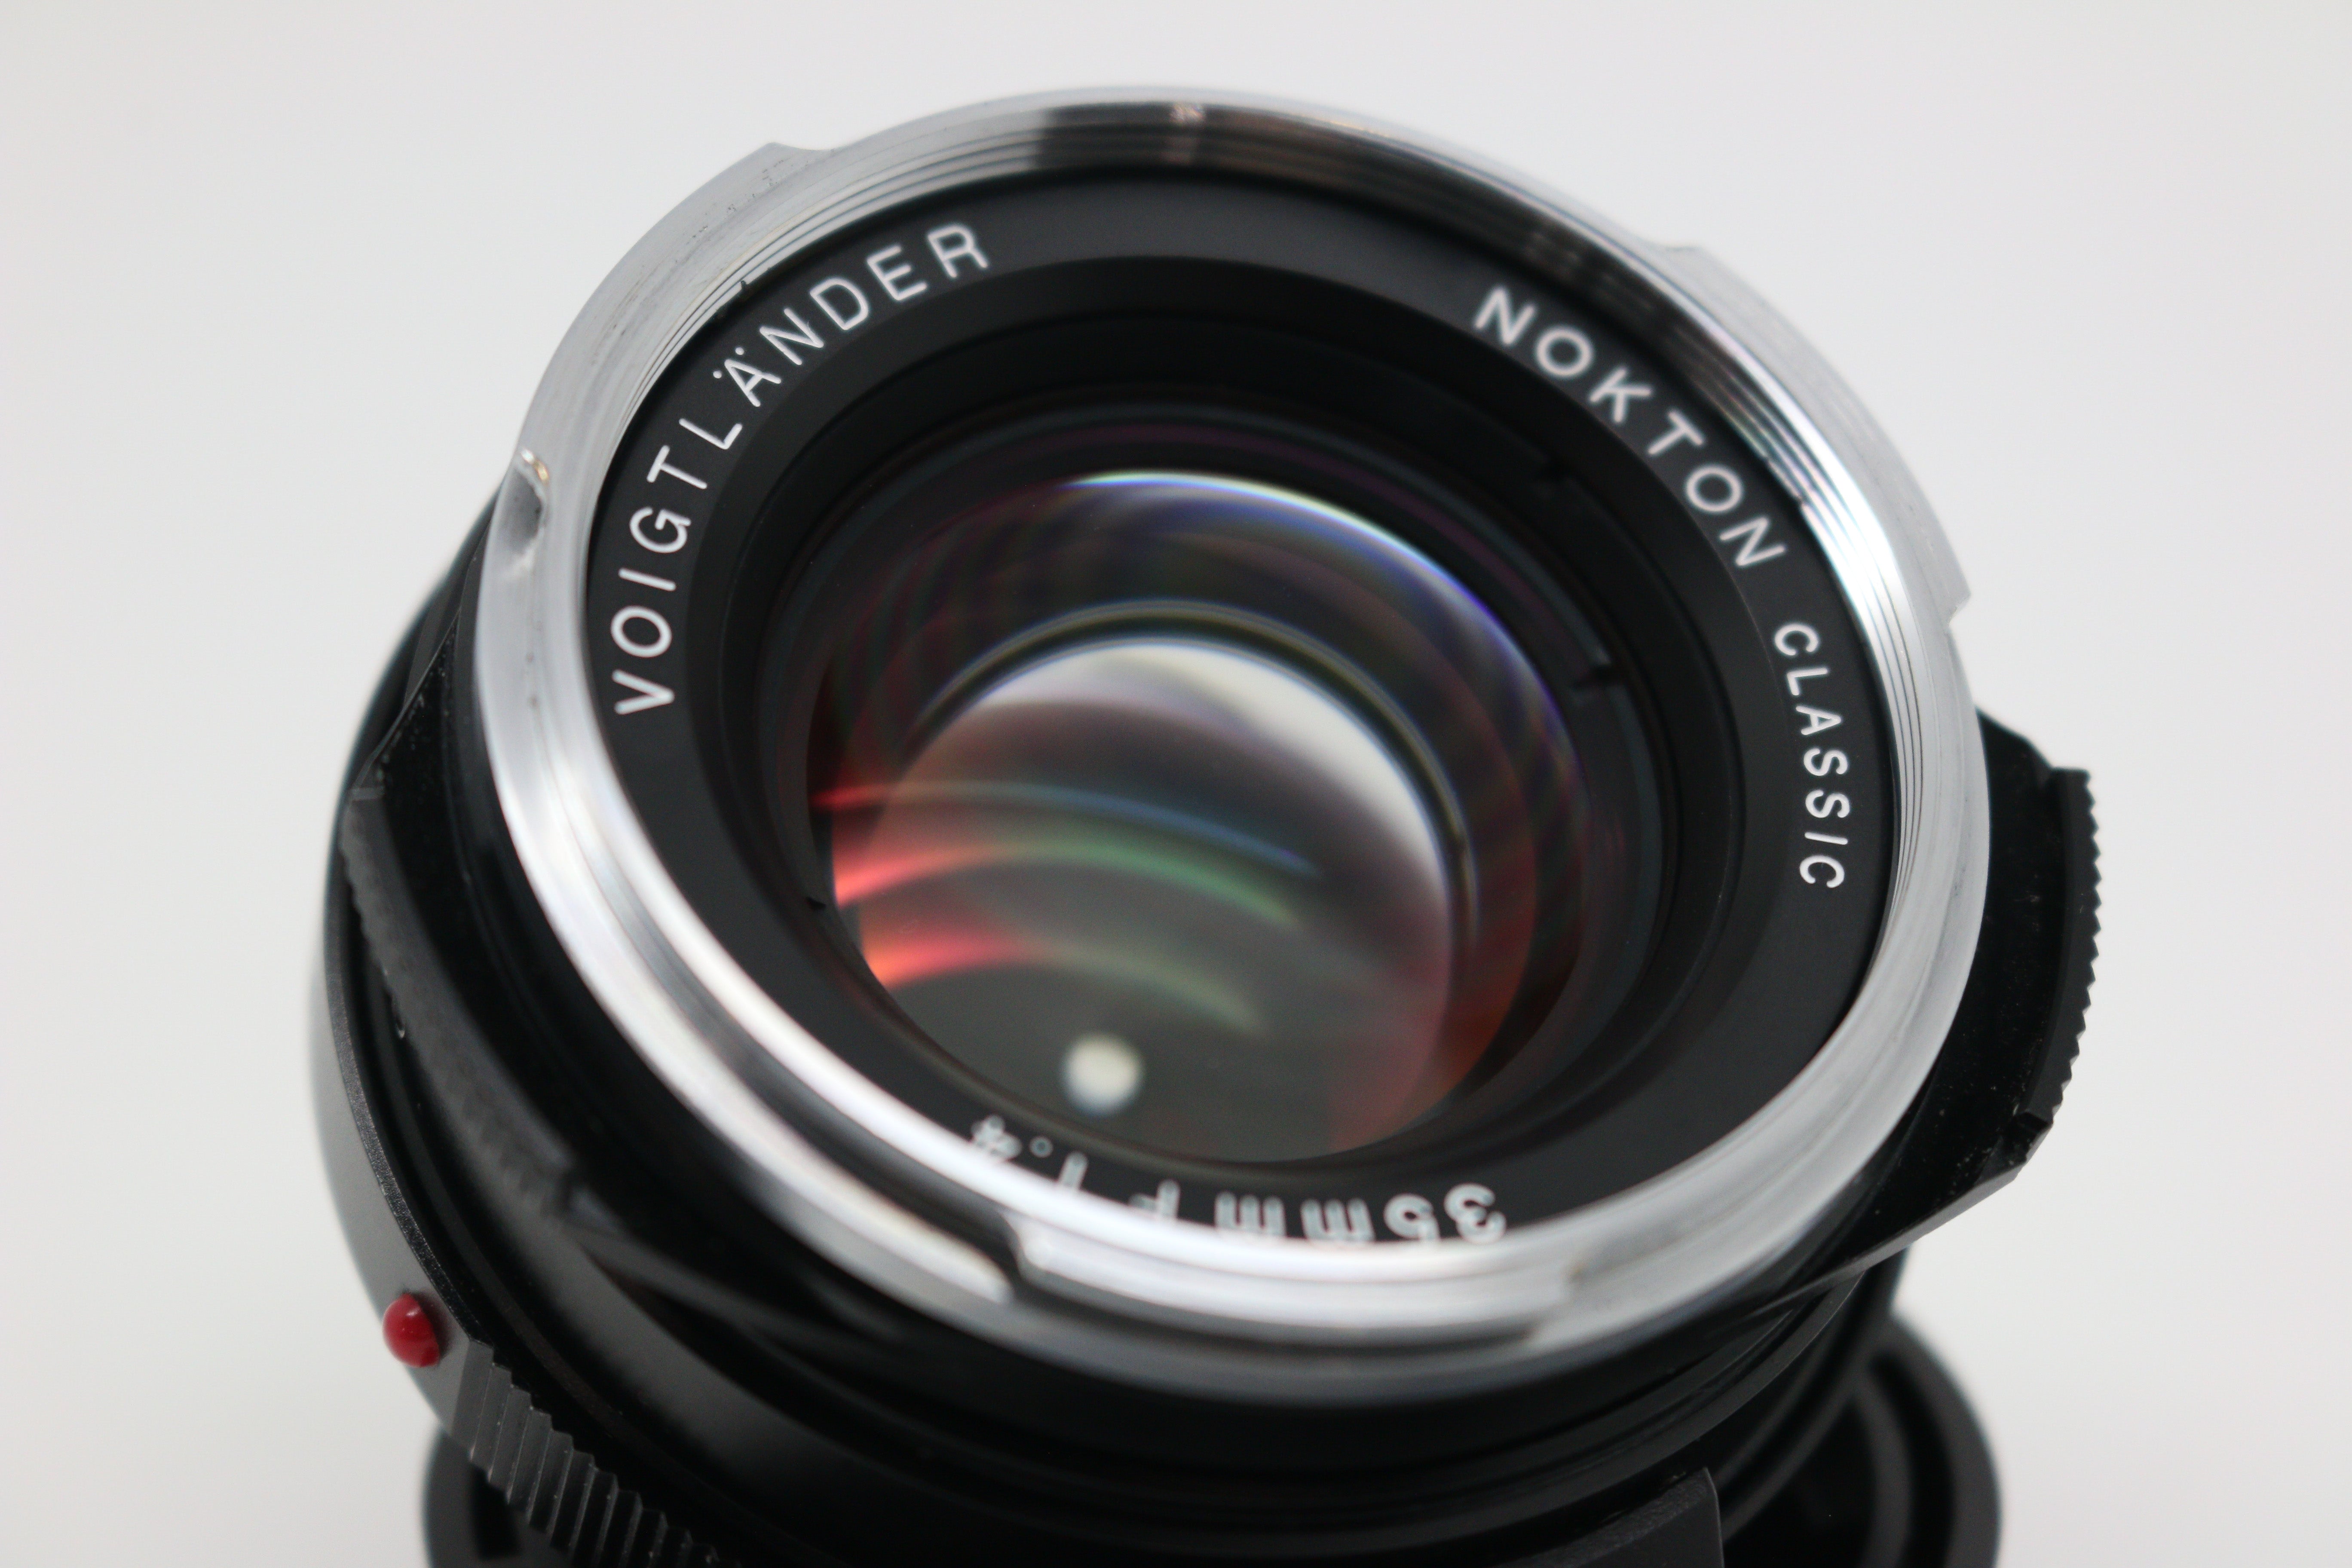 Voigtländer 35mm f/1.4 NOKTON Classic (MC) Lens